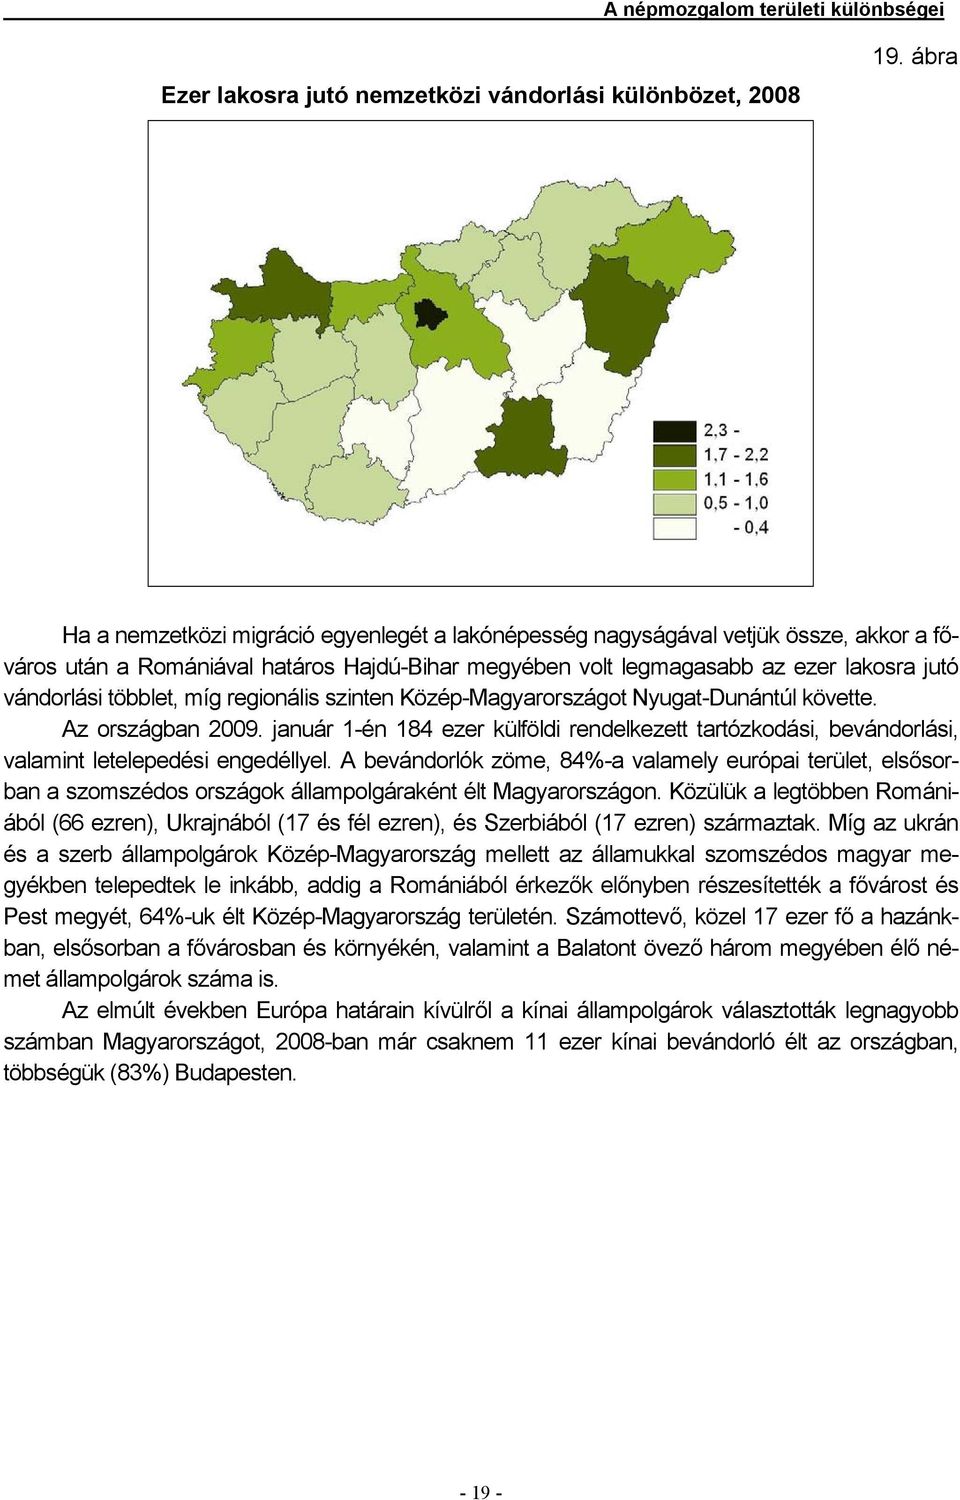 regionális szinten Közép-Magyarországot Nyugat-Dunántúl követte. Az országban 2009. január 1-én 184 ezer külföldi rendelkezett tartózkodási, bevándorlási, valamint letelepedési engedéllyel.